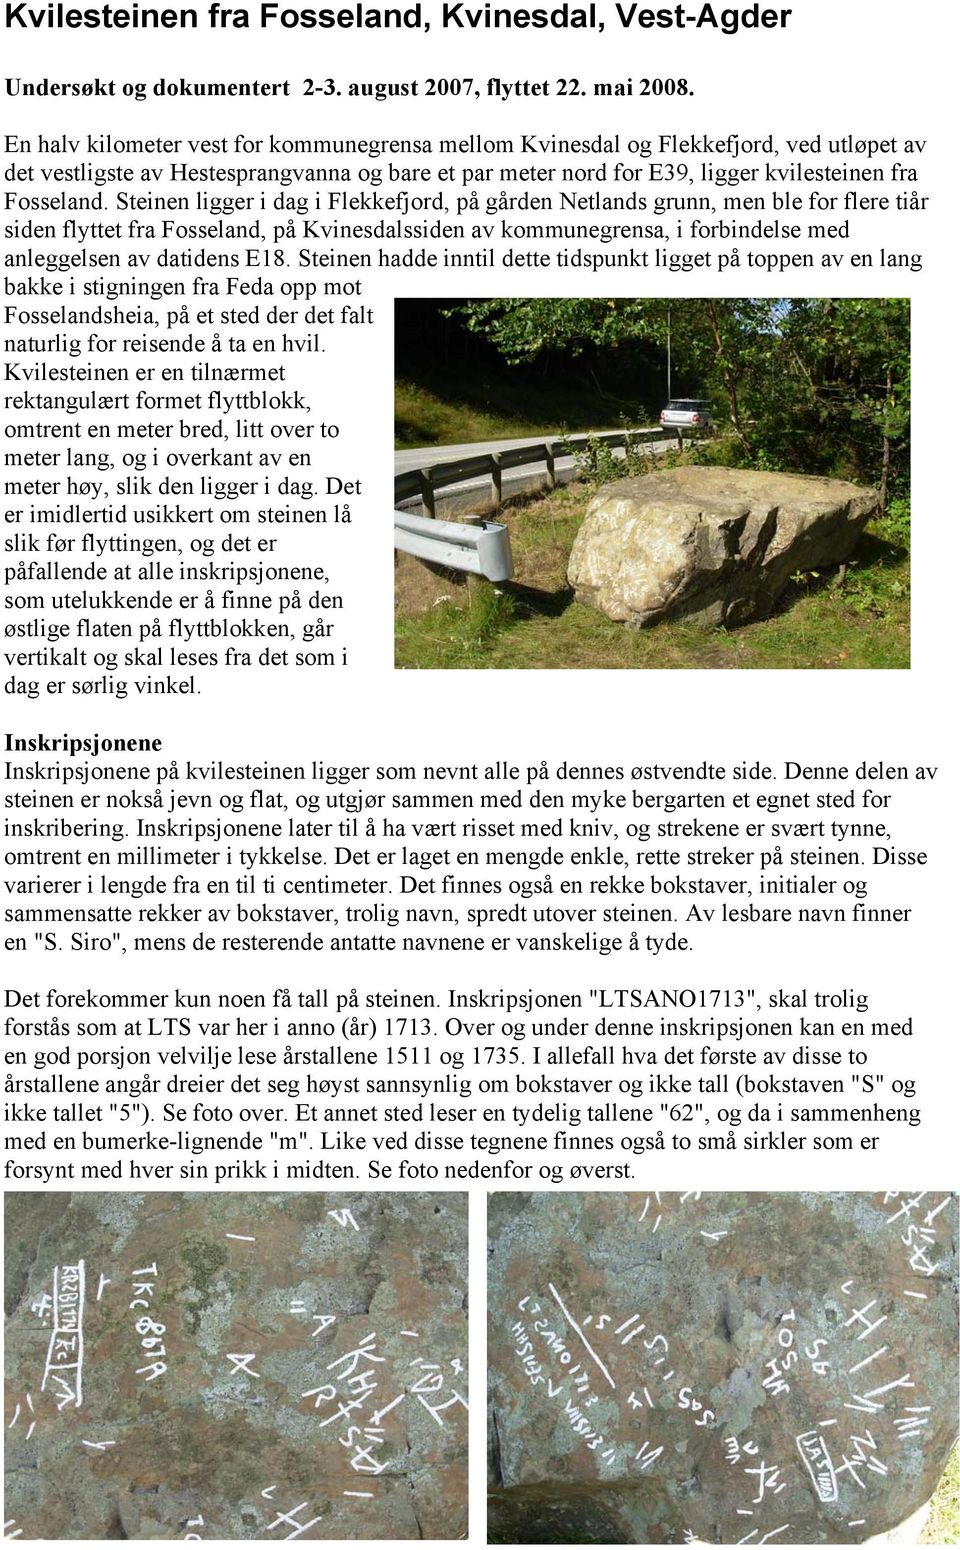 Steinen ligger i dag i Flekkefjord, på gården Netlands grunn, men ble for flere tiår siden flyttet fra Fosseland, på Kvinesdalssiden av kommunegrensa, i forbindelse med anleggelsen av datidens E18.